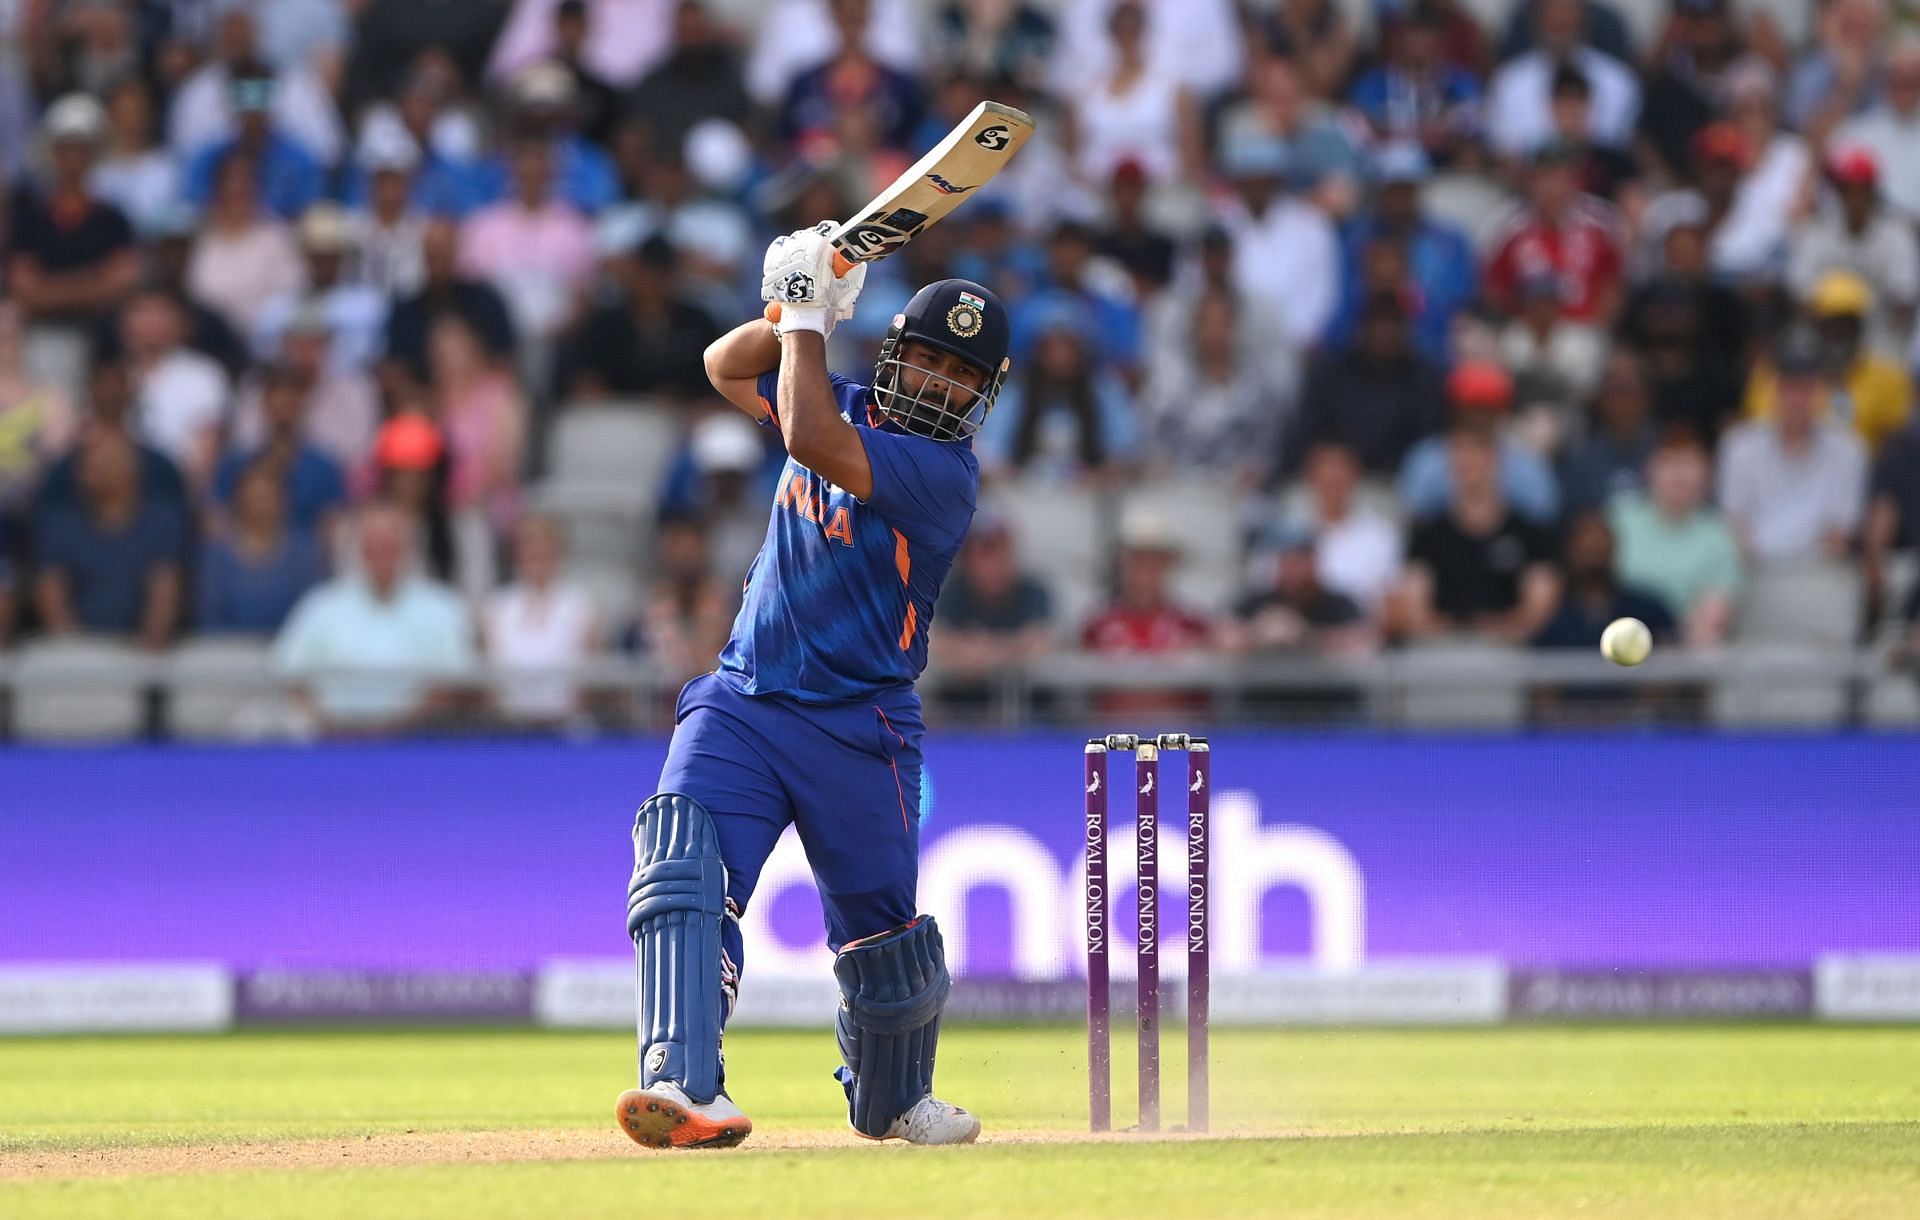 Rishabh Pant telah memainkan beberapa pukulan hebat di kriket internasional.  foto: Getty Images